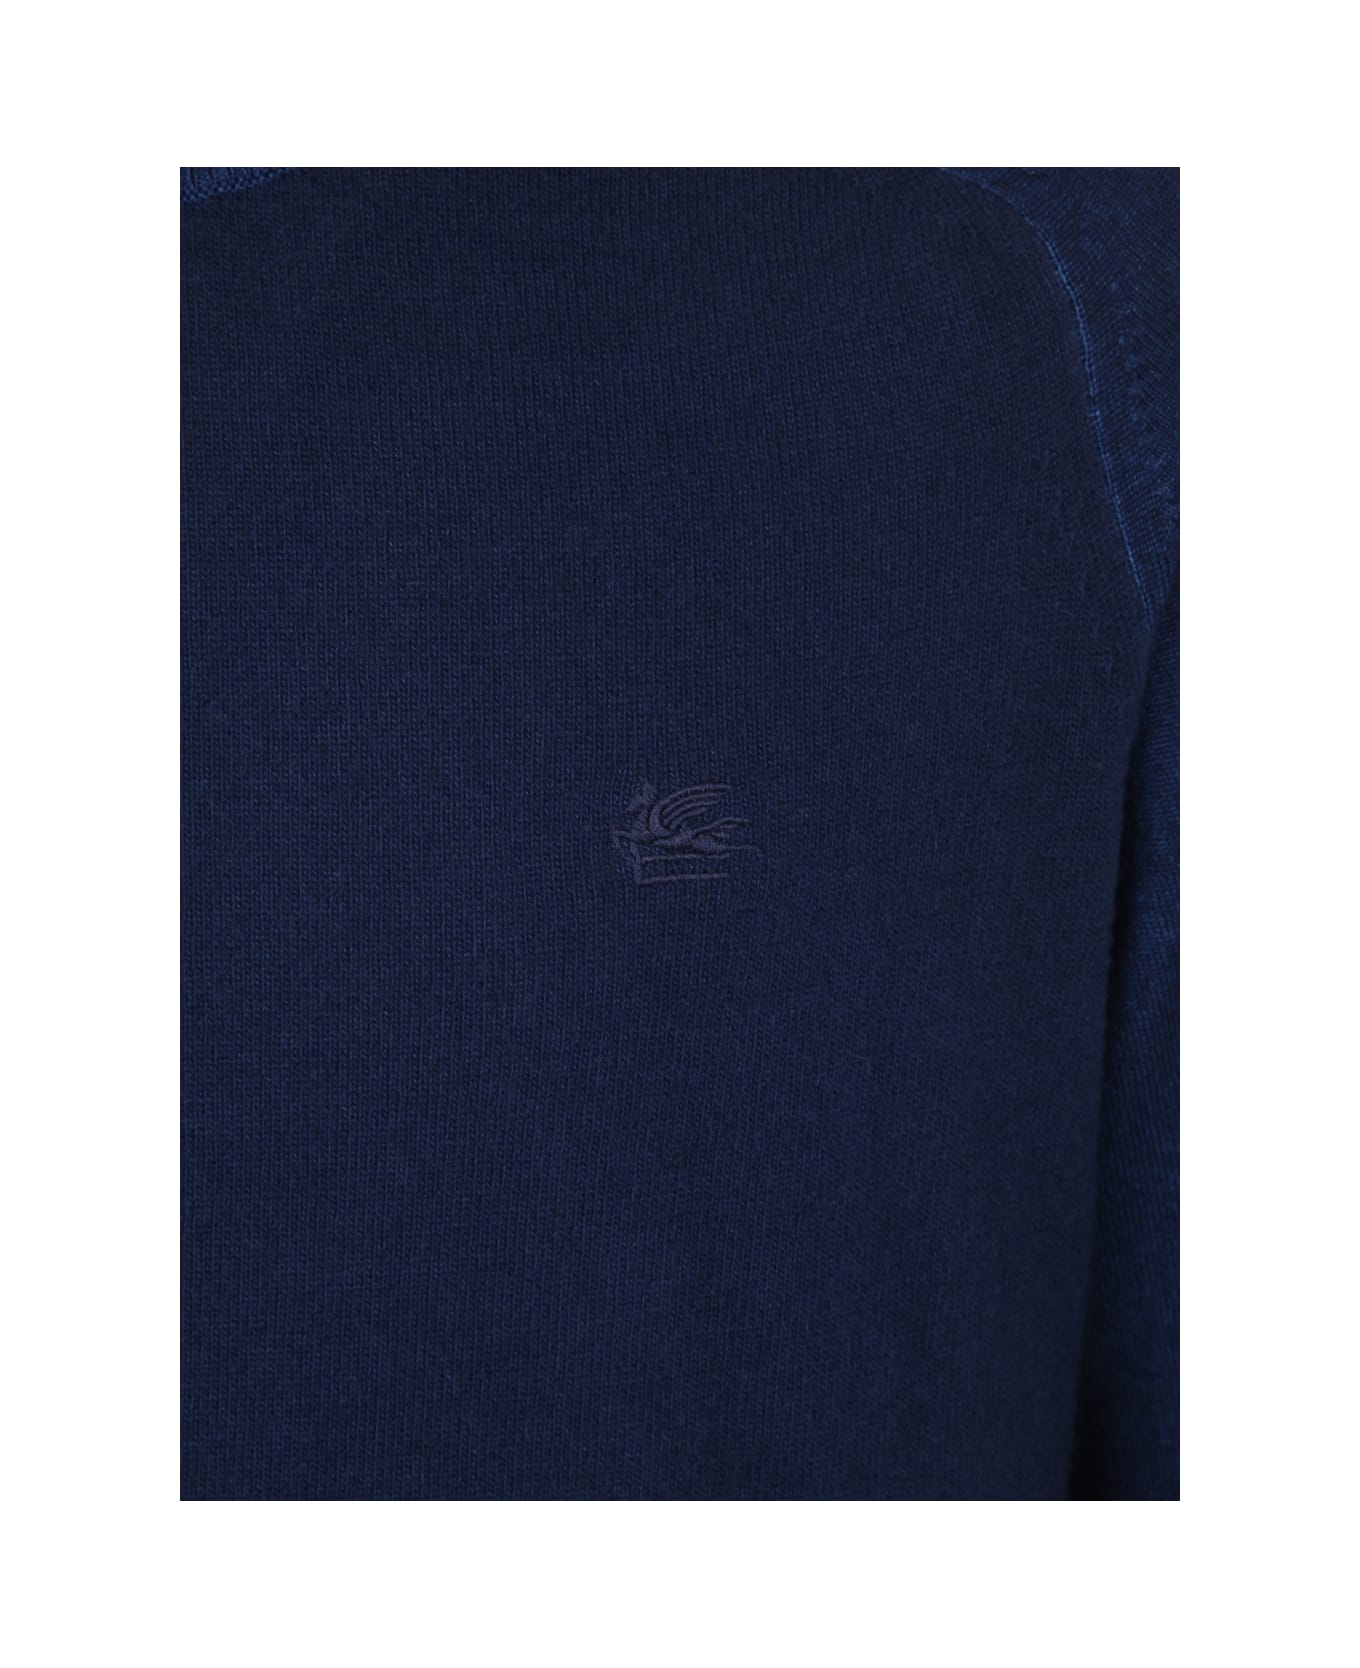 Etro Martello Crew Neck Sweater - Blue ニットウェア